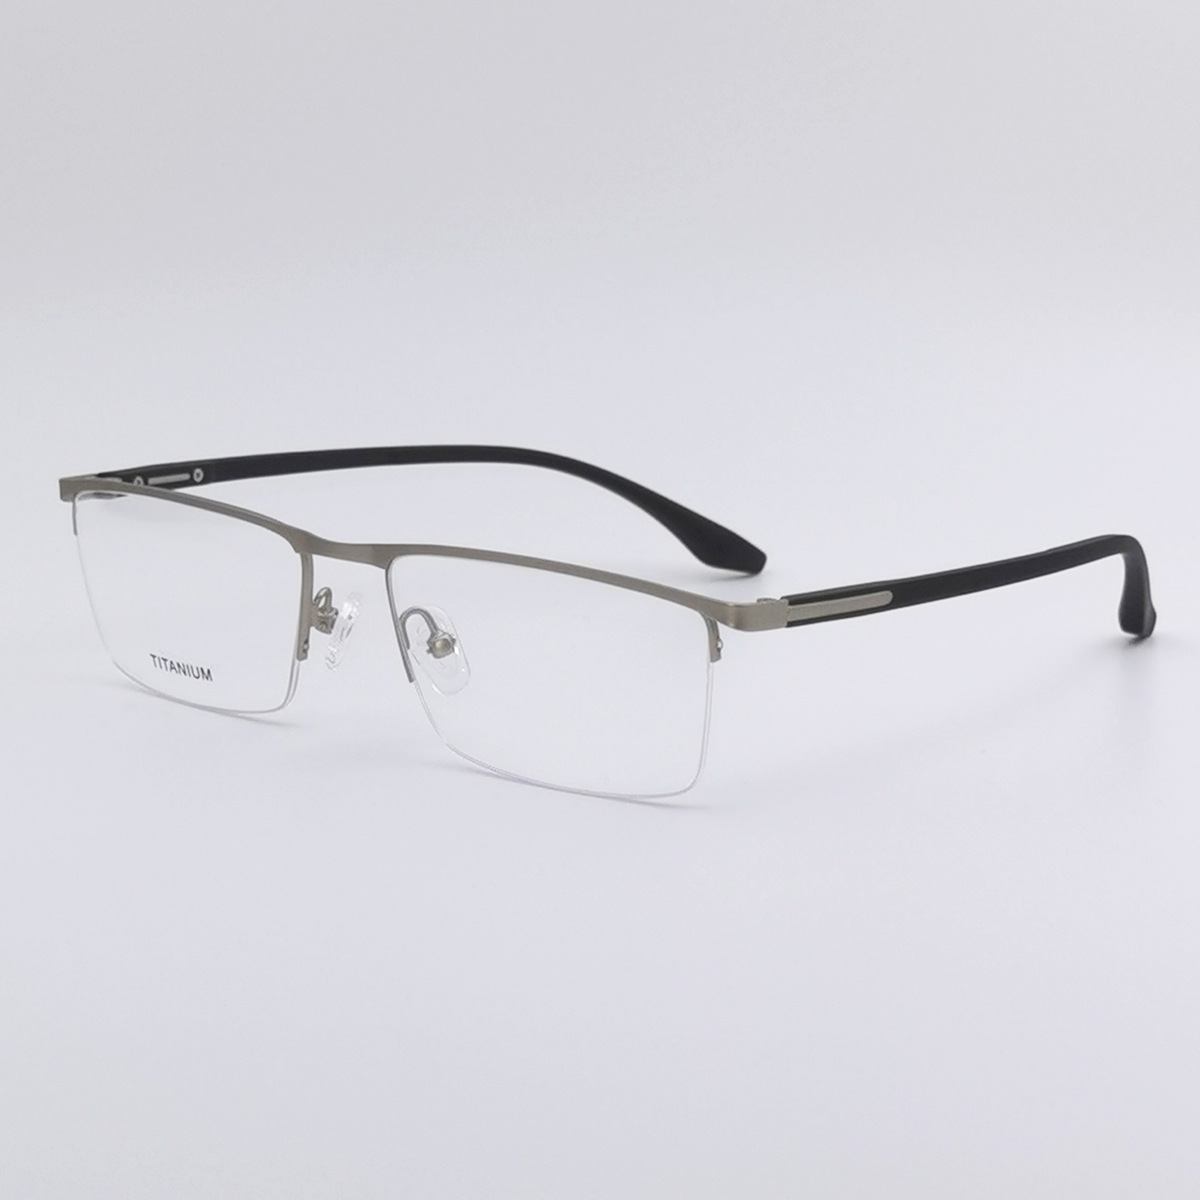 P9311深圳工厂制造超轻商务方框光学眼镜全框大脸男式近视眼镜架